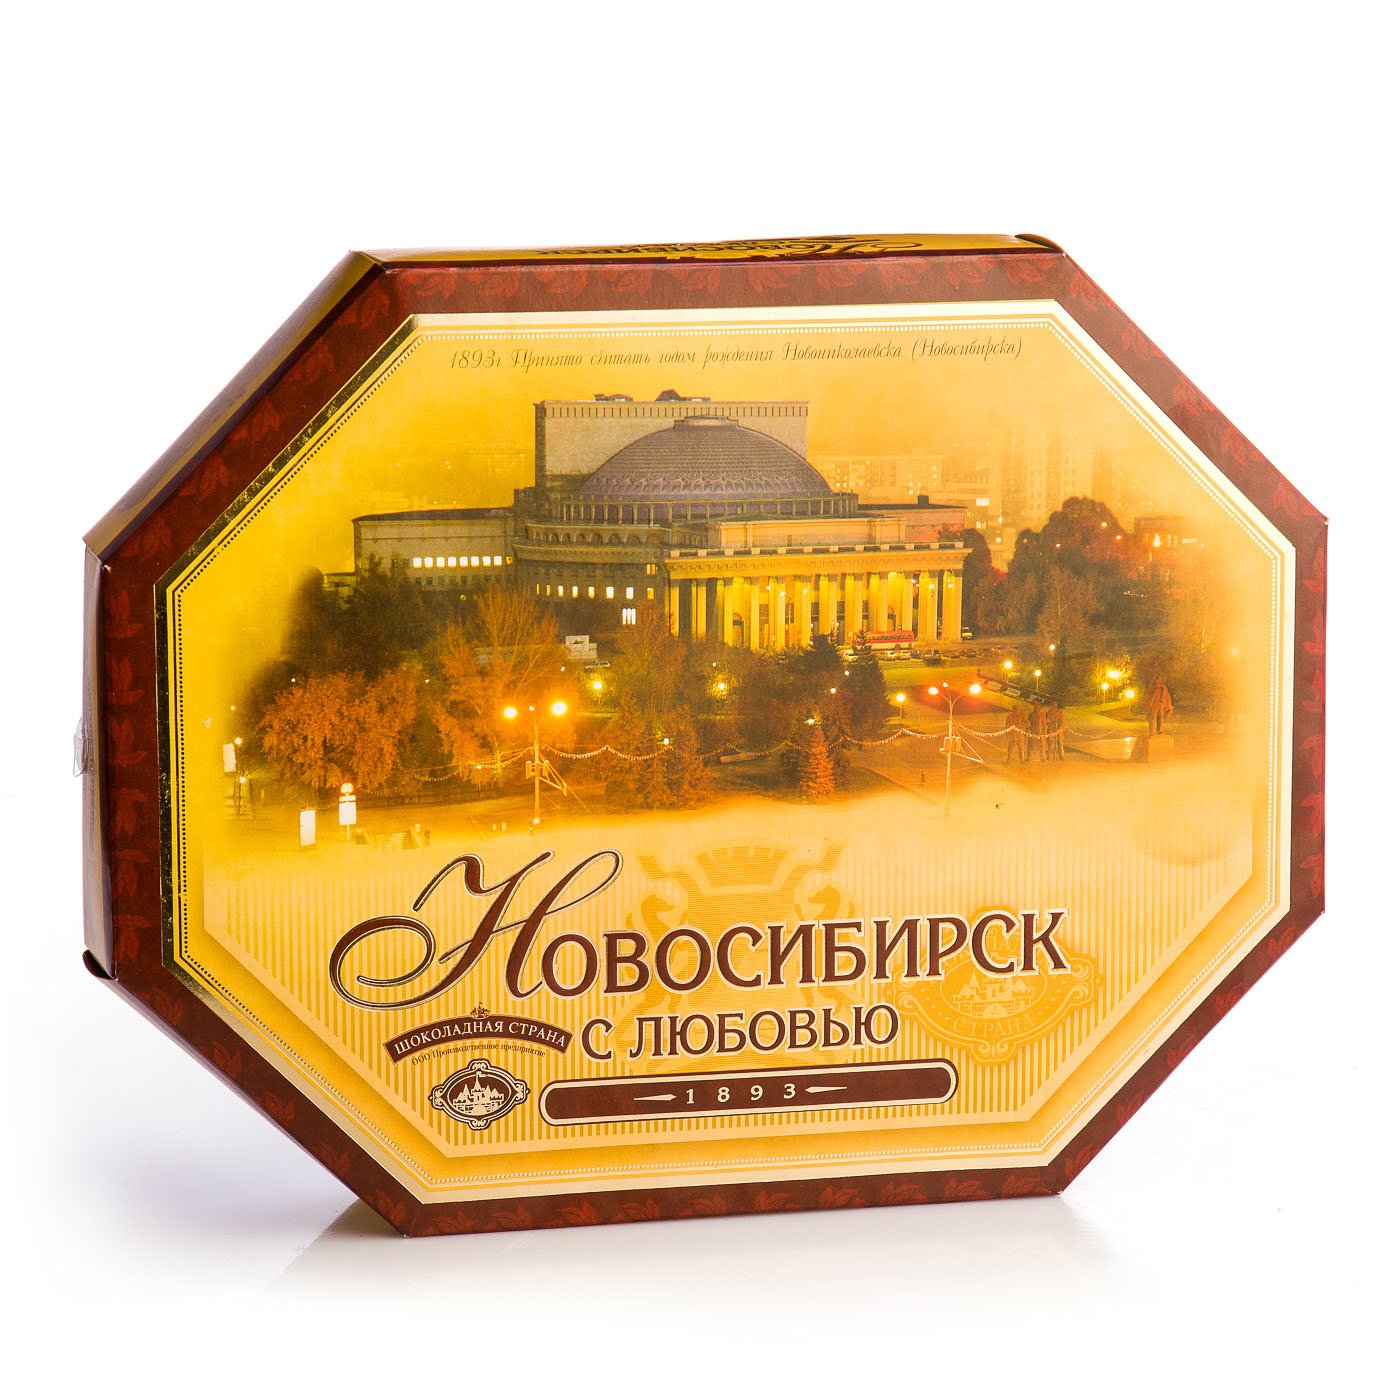 Набор конфет Шоколадная страна Новосибирск с любовью к/к 490г